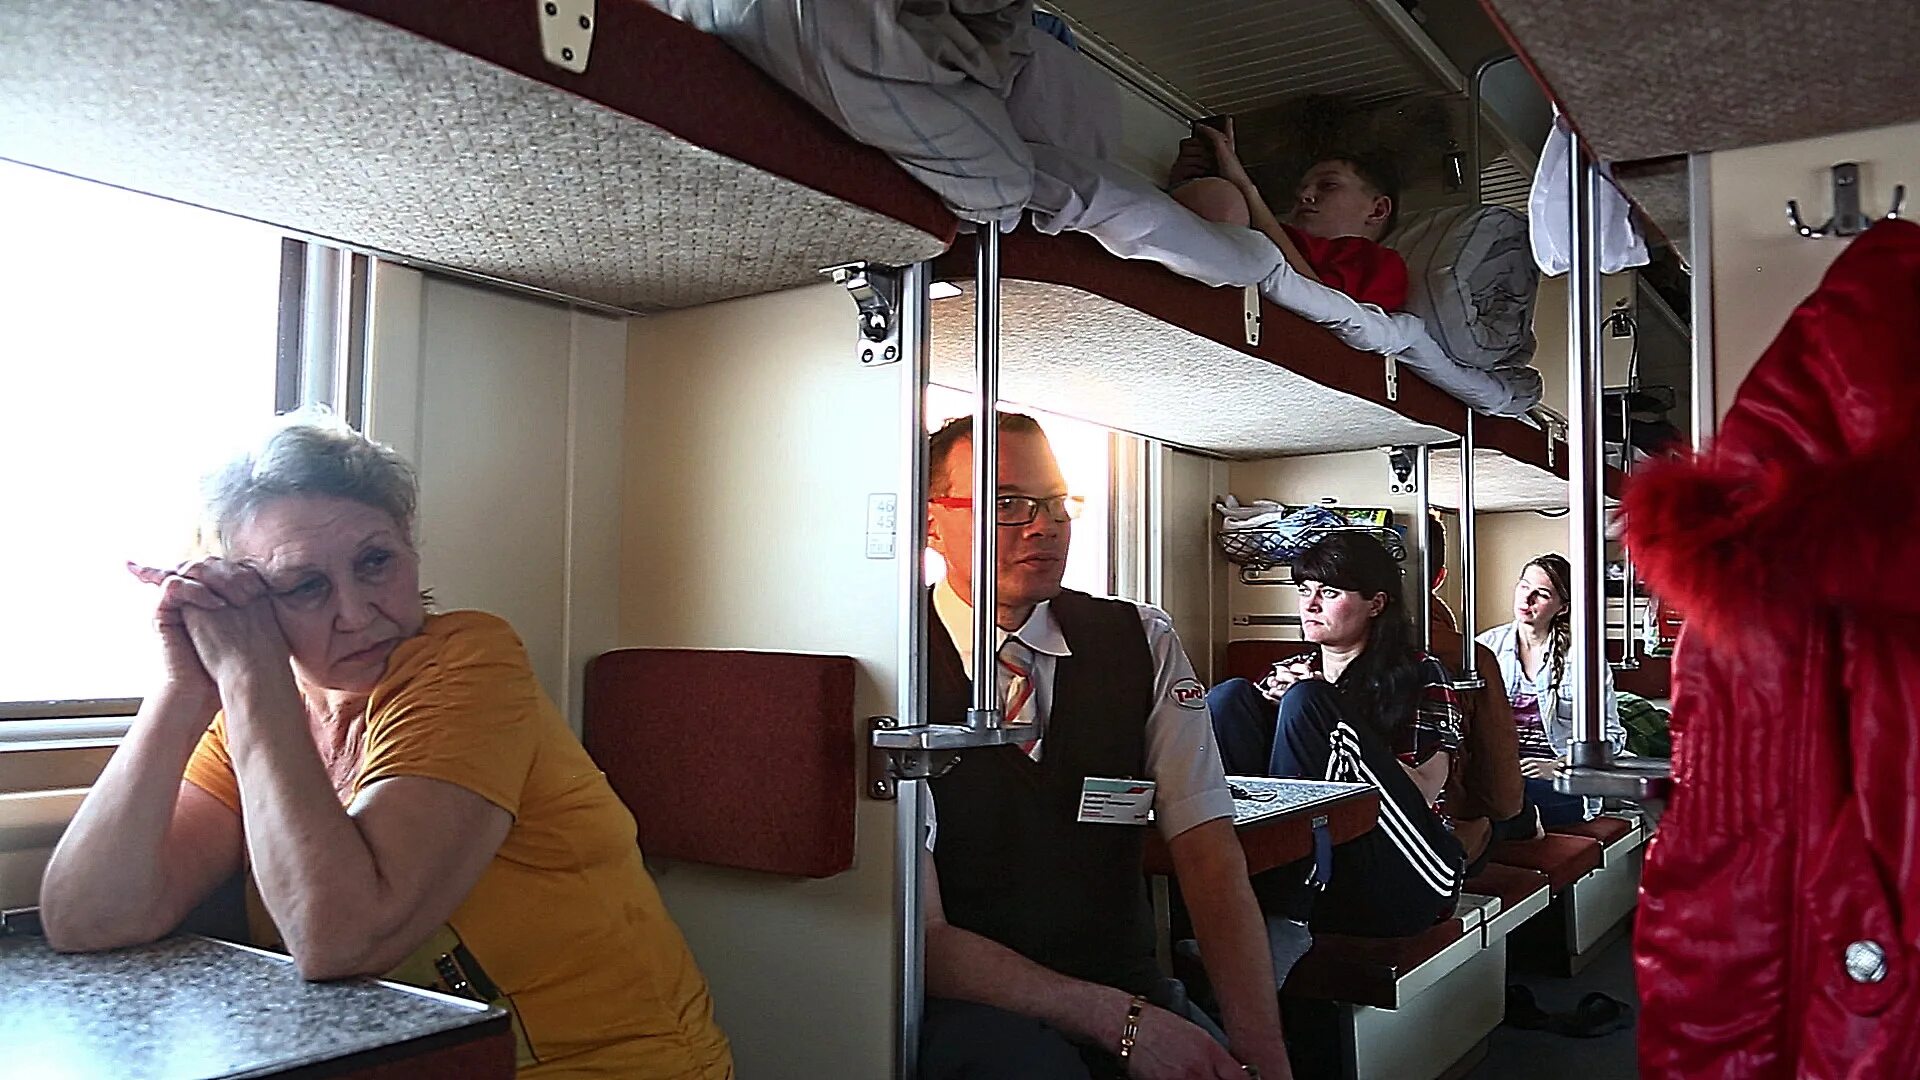 Плацкартный вагон поезда фото. Плацкарт в поезде. Плацкарт в поезде фото. Плацкарт пассажиры. Поезд внутри с людьми.